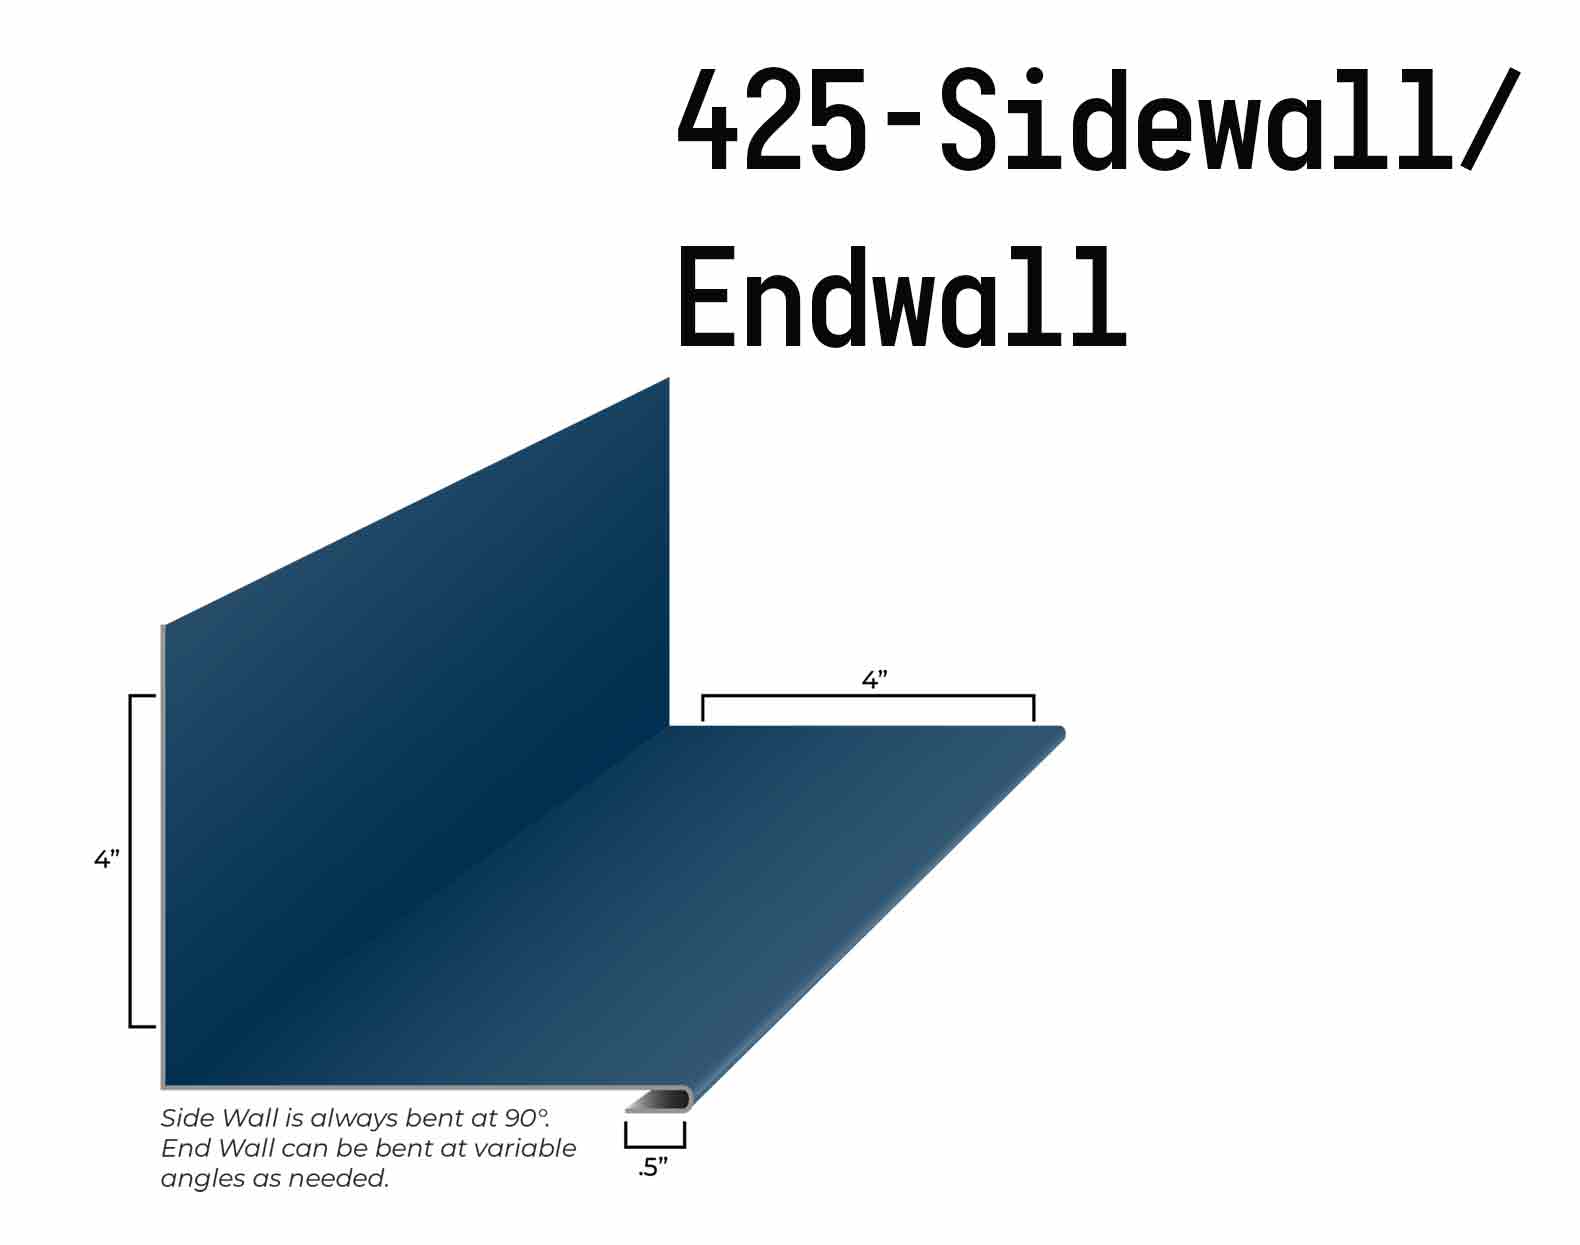 MRS-FF100 425-Sidewall:Endwall